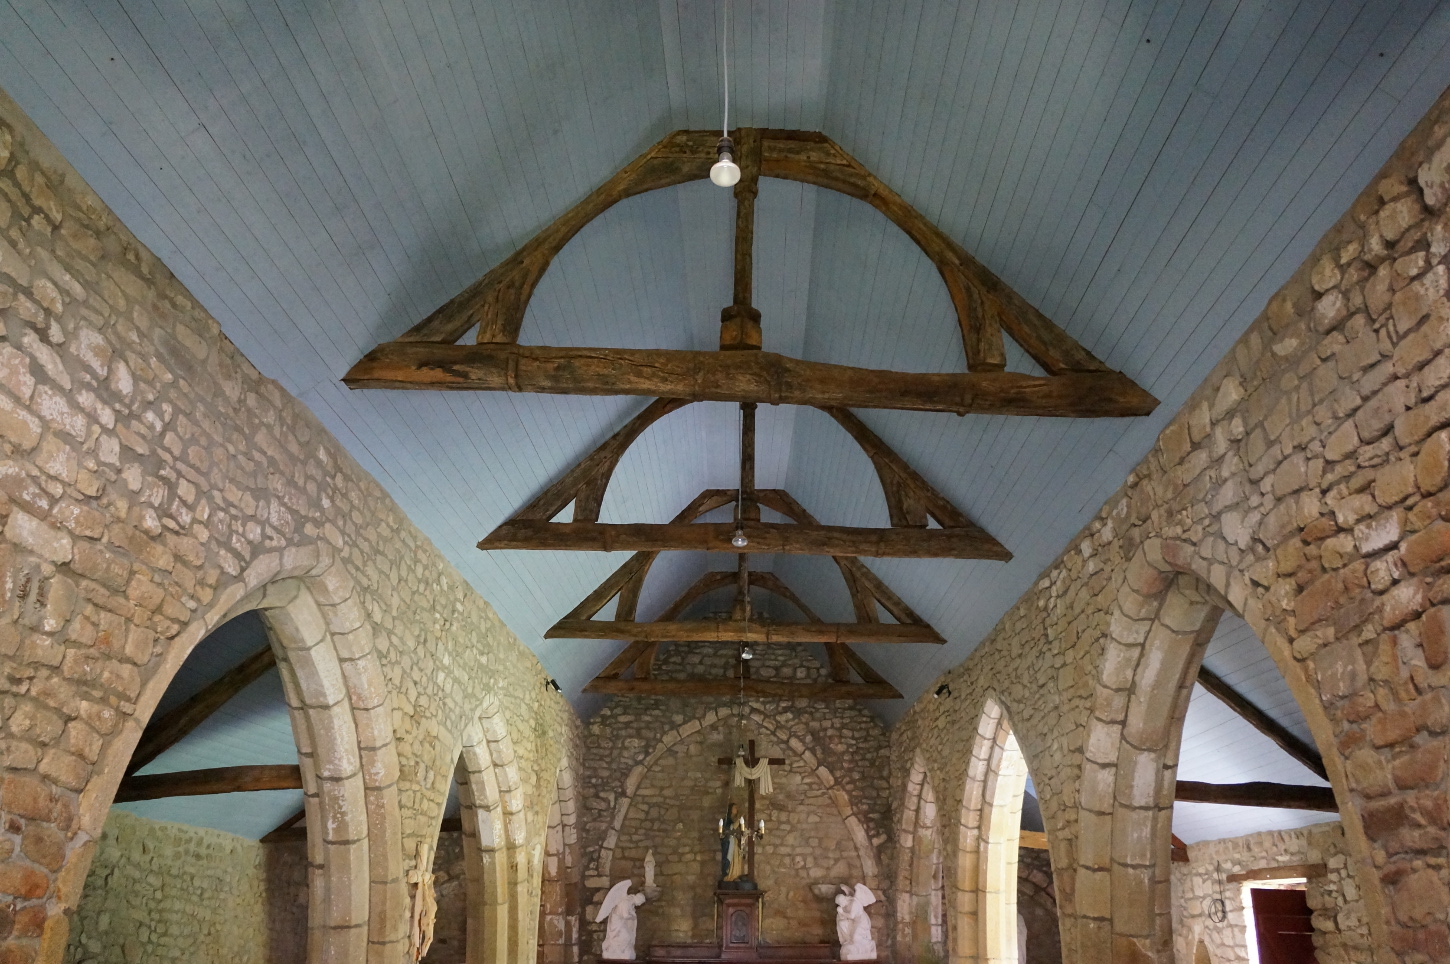 Charpente du XIVe siècle couvrant la nef de la chapelle et lambris du XIXe siècle. Cliché Victorien Leman, 2017.